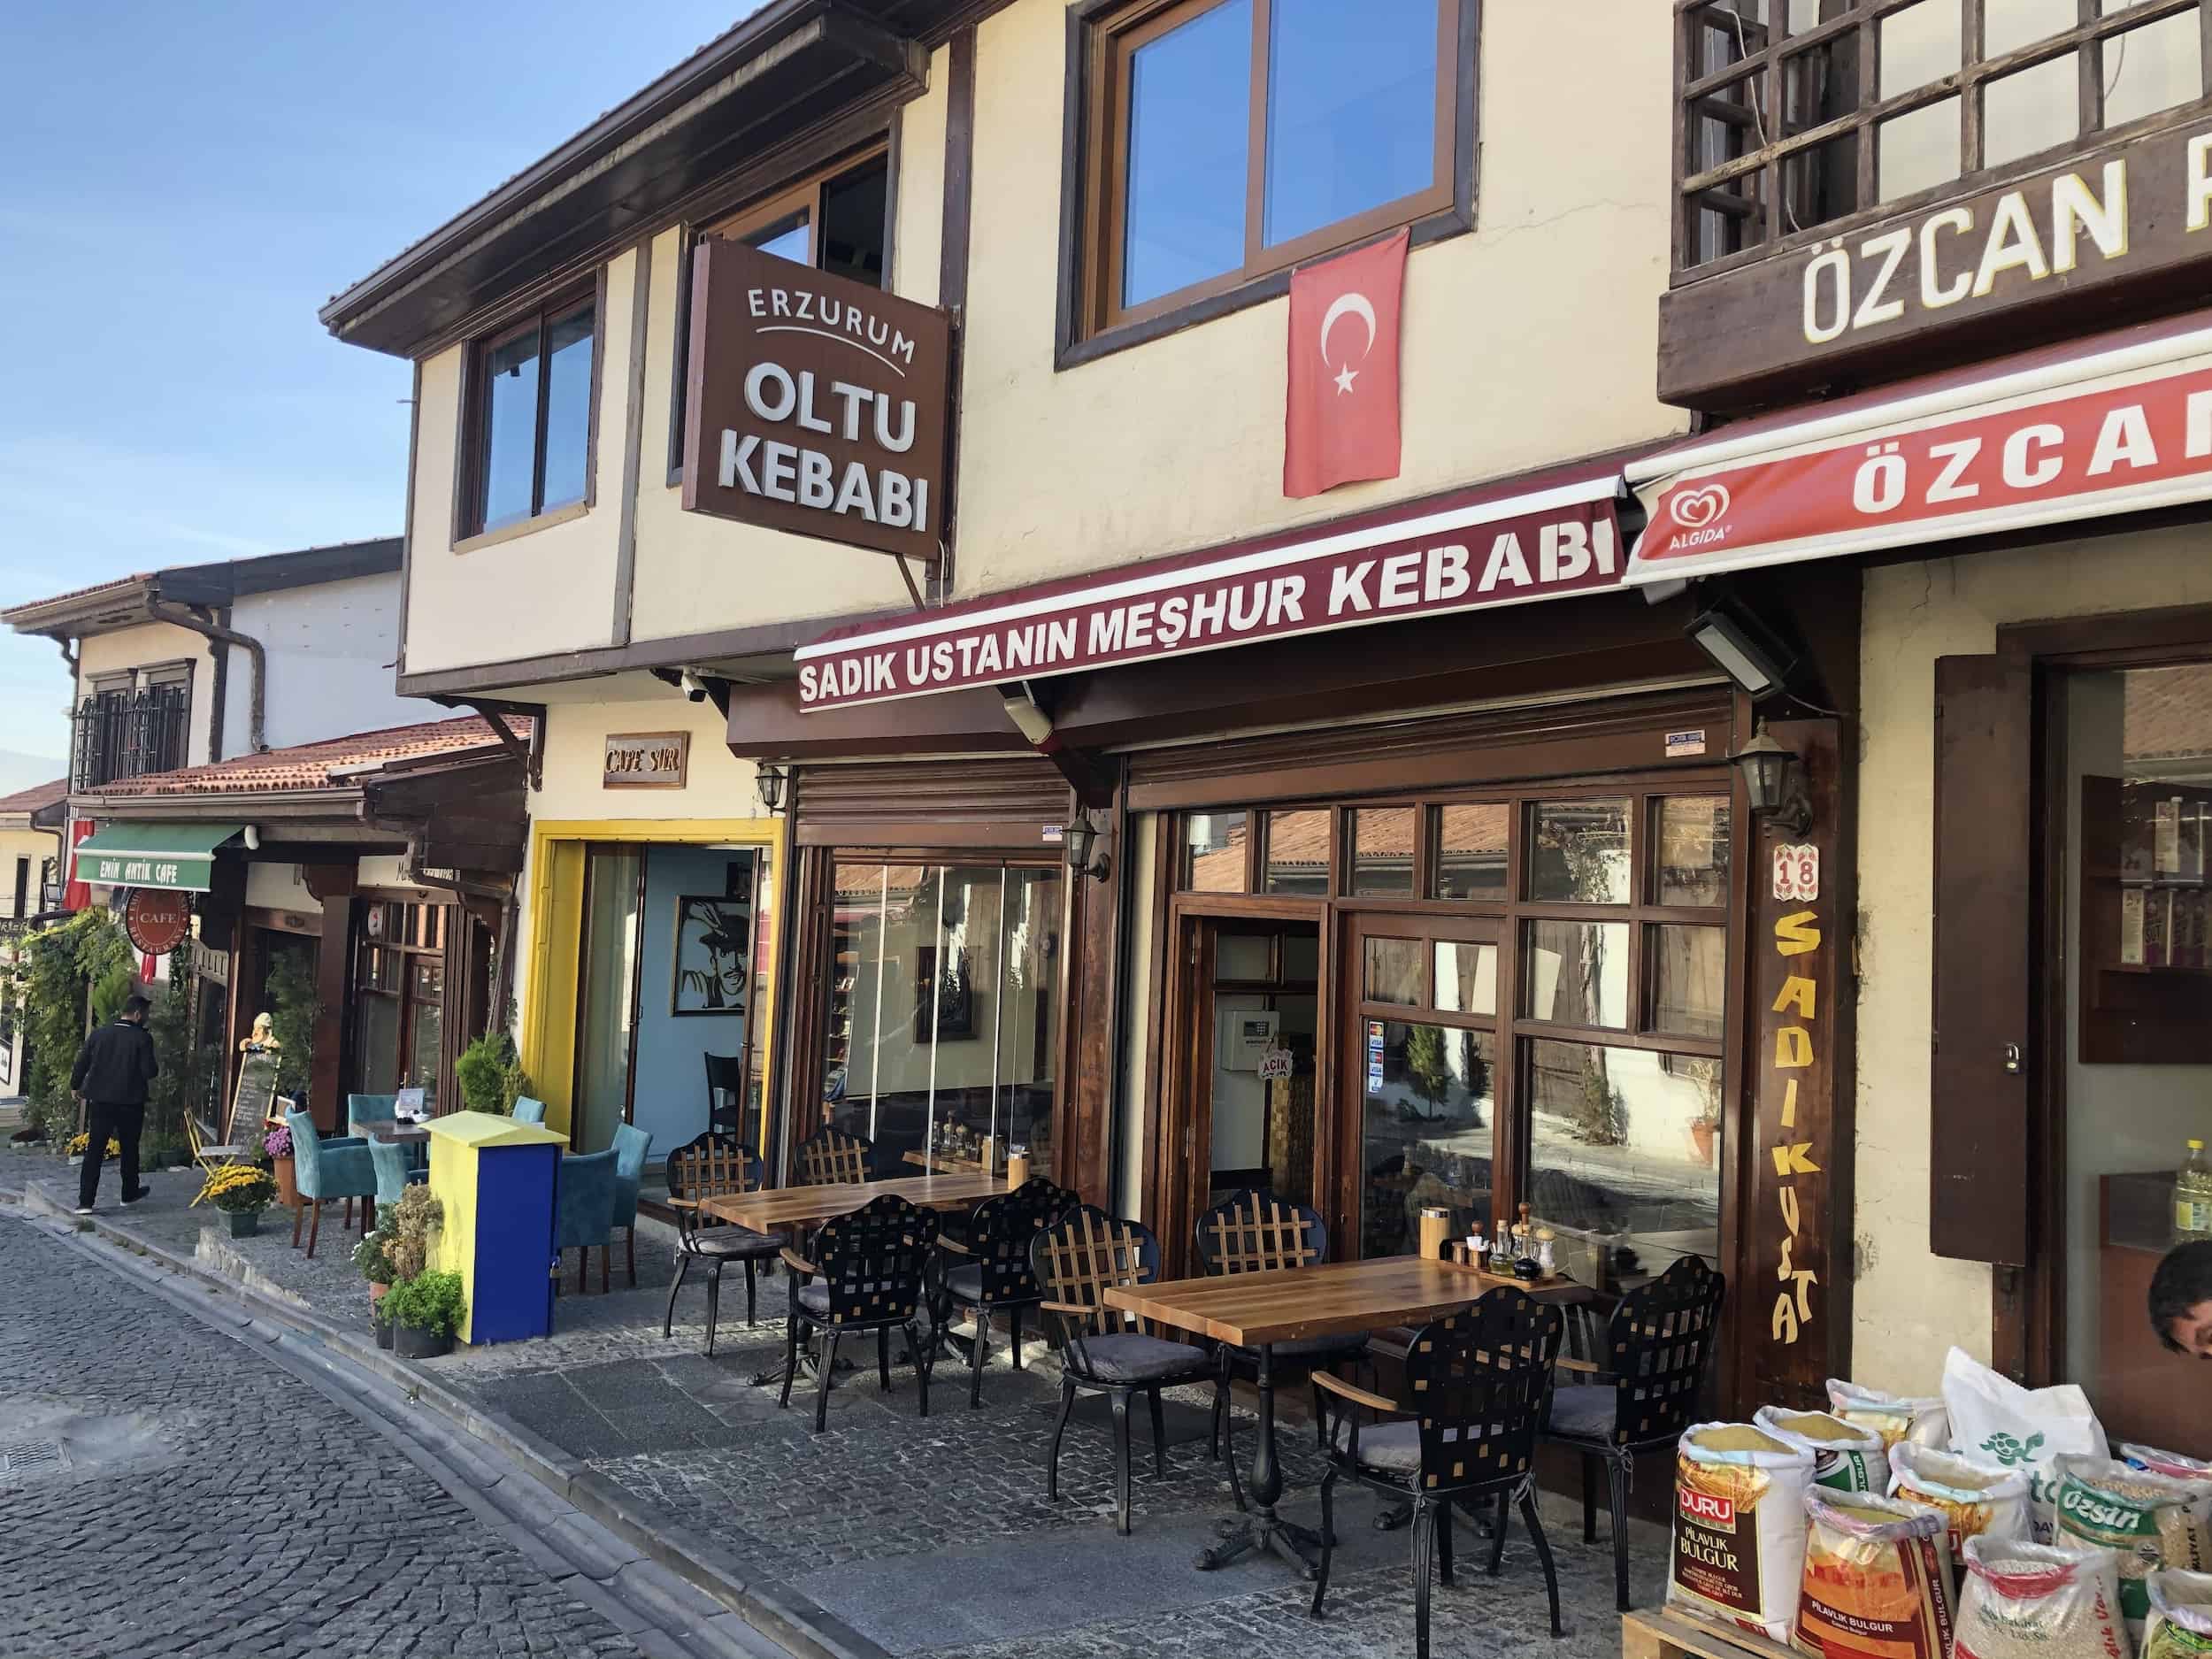 Sadık Ustanın Meşhur Kebabı in Ankara, Turkey